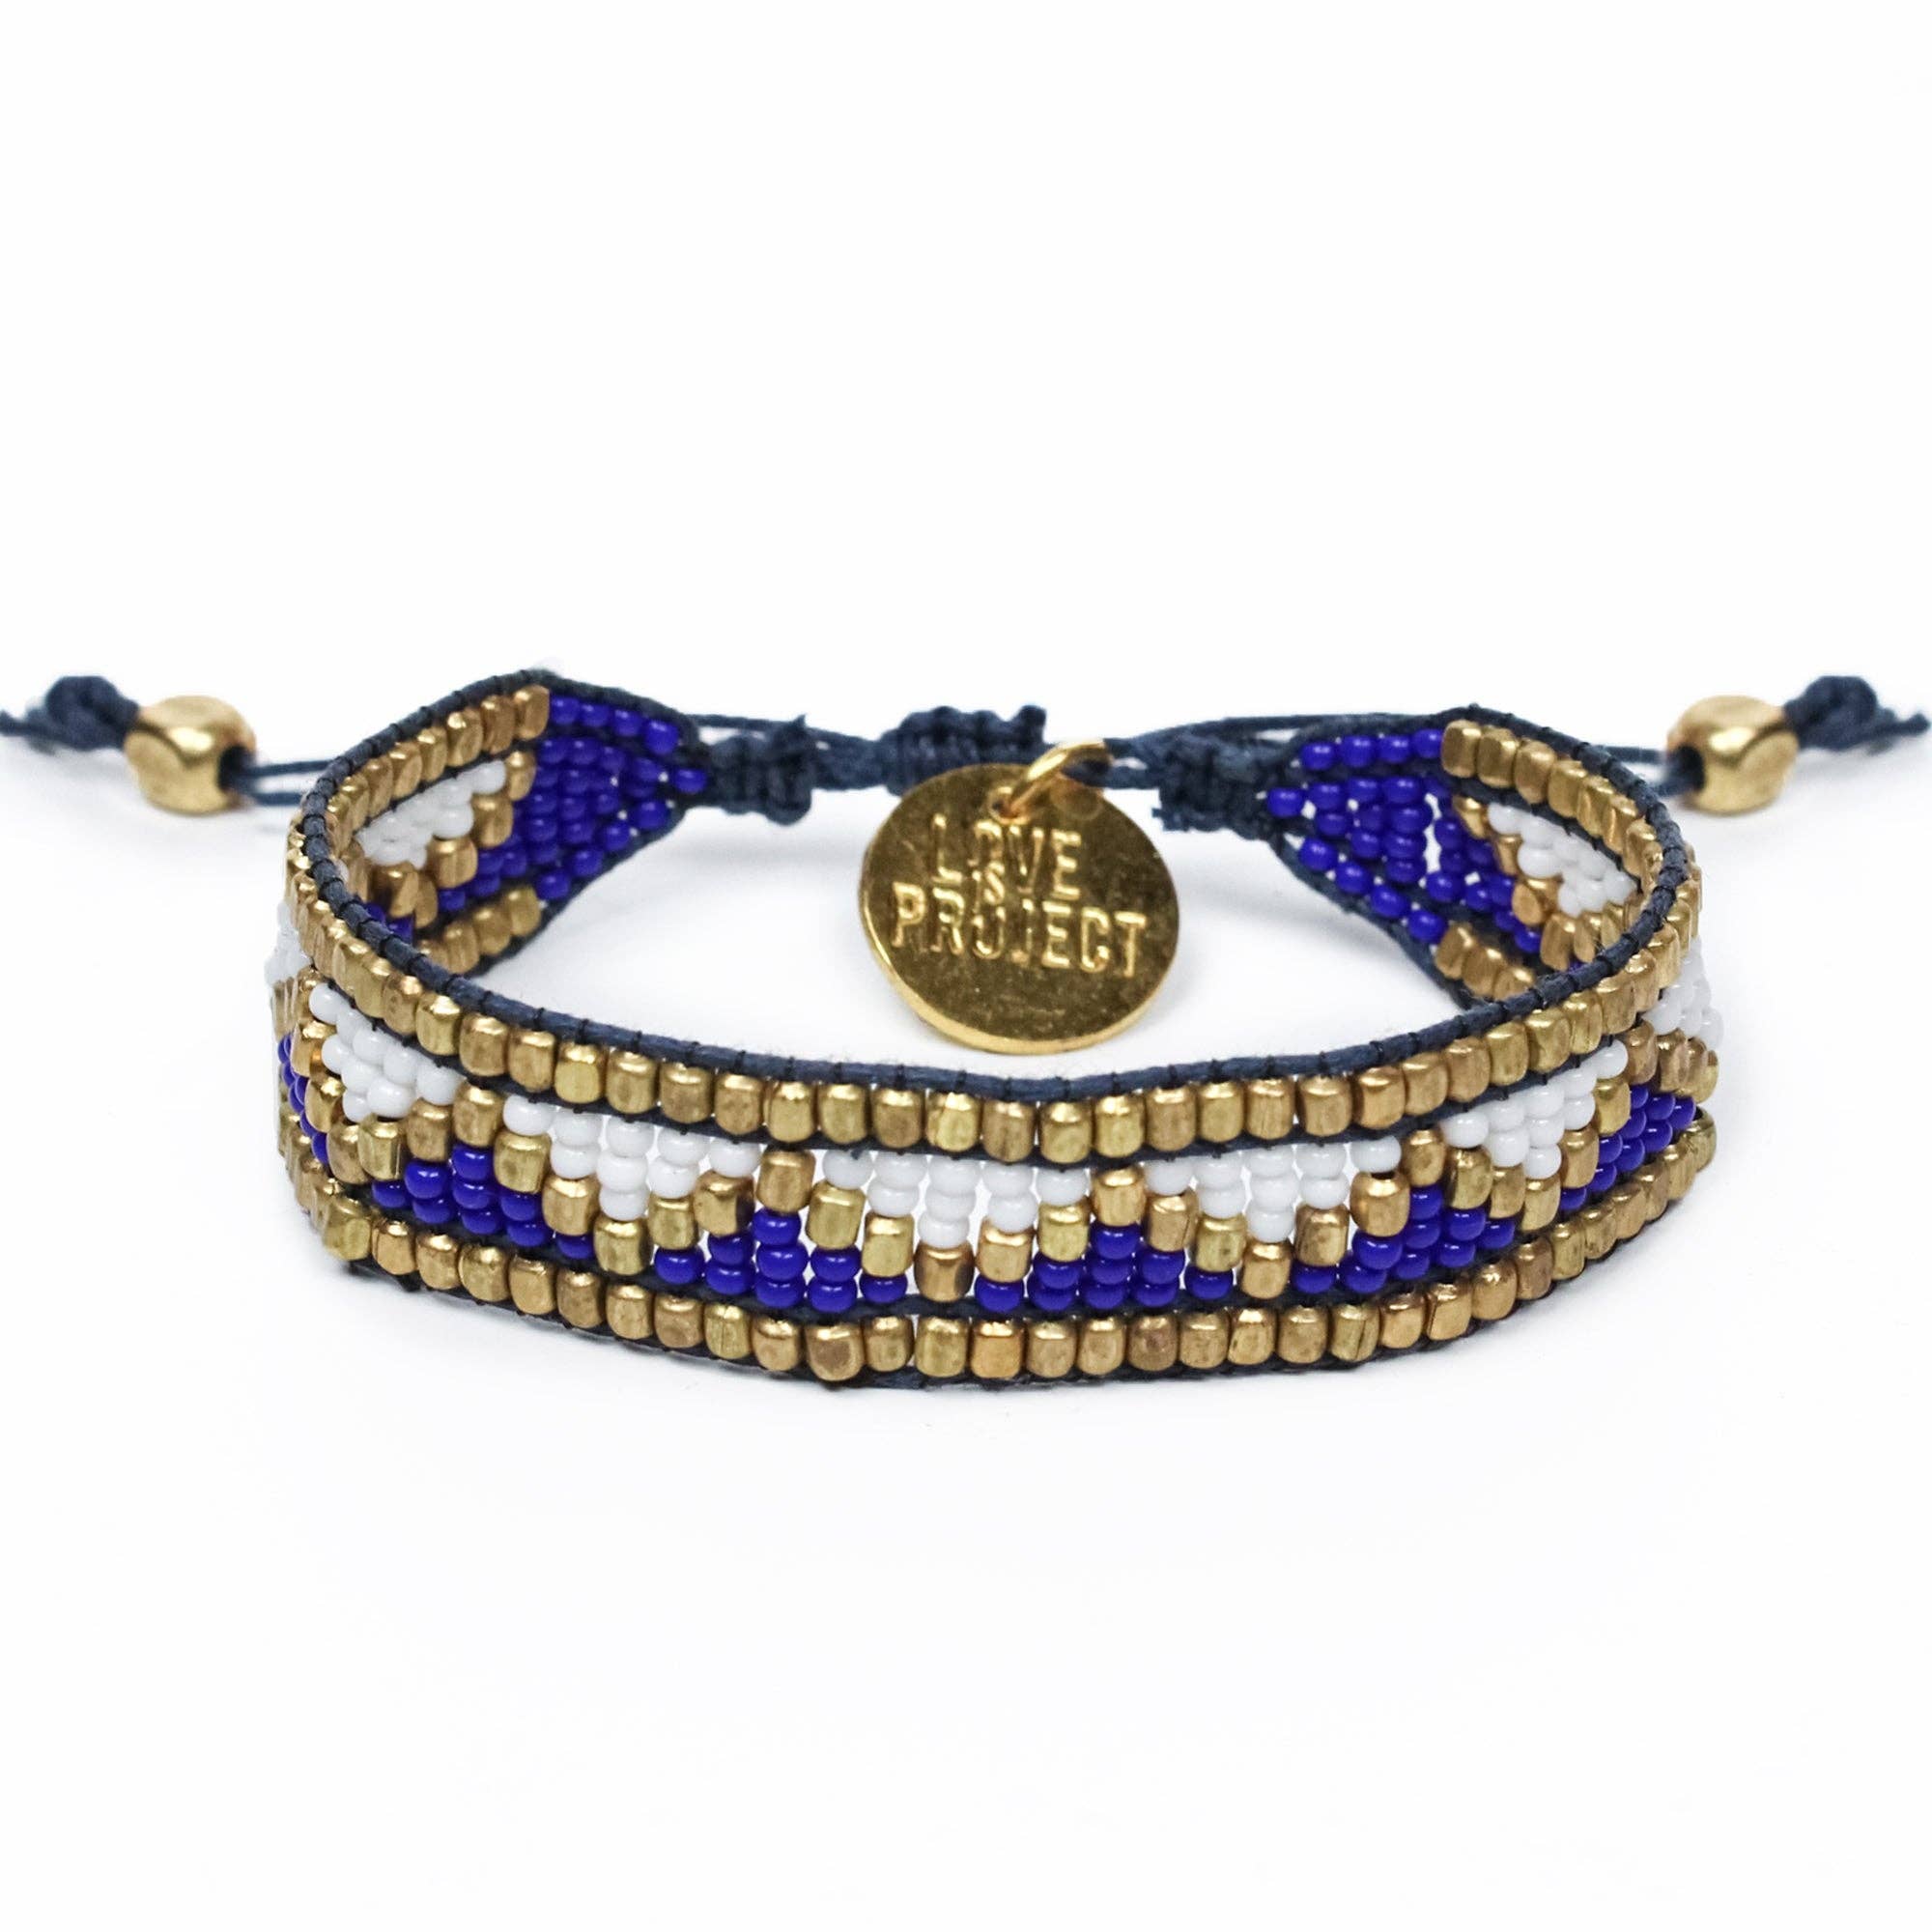 गौरी शंकर रुद्राक्ष है बेहद लाभकारी, धारण करने से सुधर जाता है दांपत्य  जीवन, ब्रेसलेट पहनने के हैं 5 फायदे - 5 Benefits of rudraksha beads bracelet  gauri shankar ...